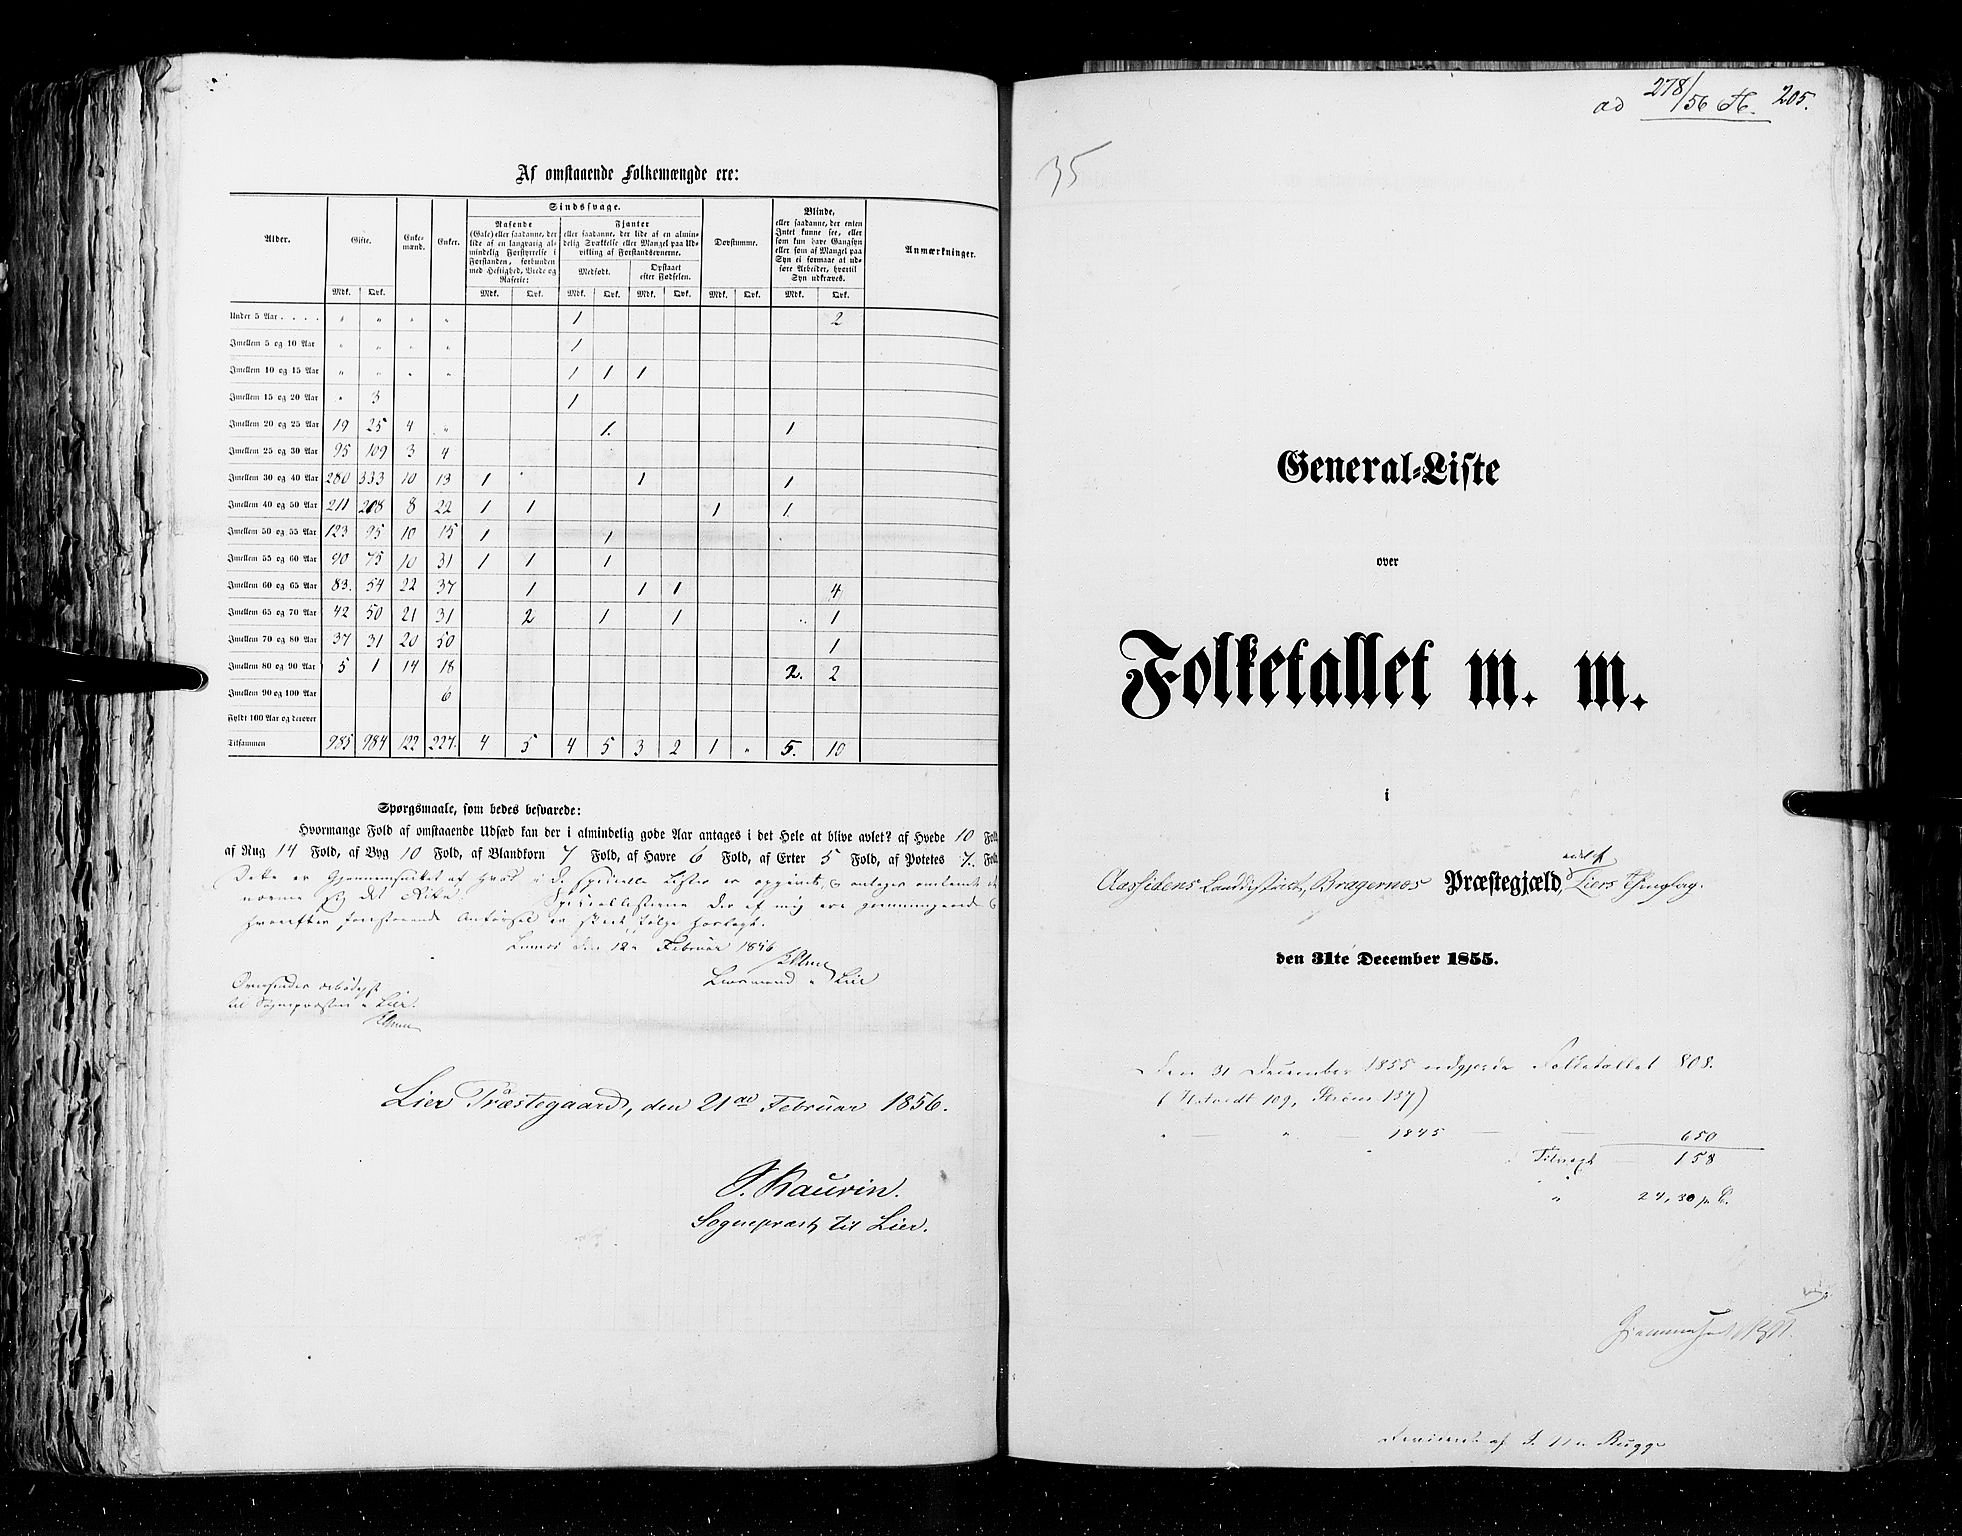 RA, Folketellingen 1855, bind 2: Kristians amt, Buskerud amt og Jarlsberg og Larvik amt, 1855, s. 205